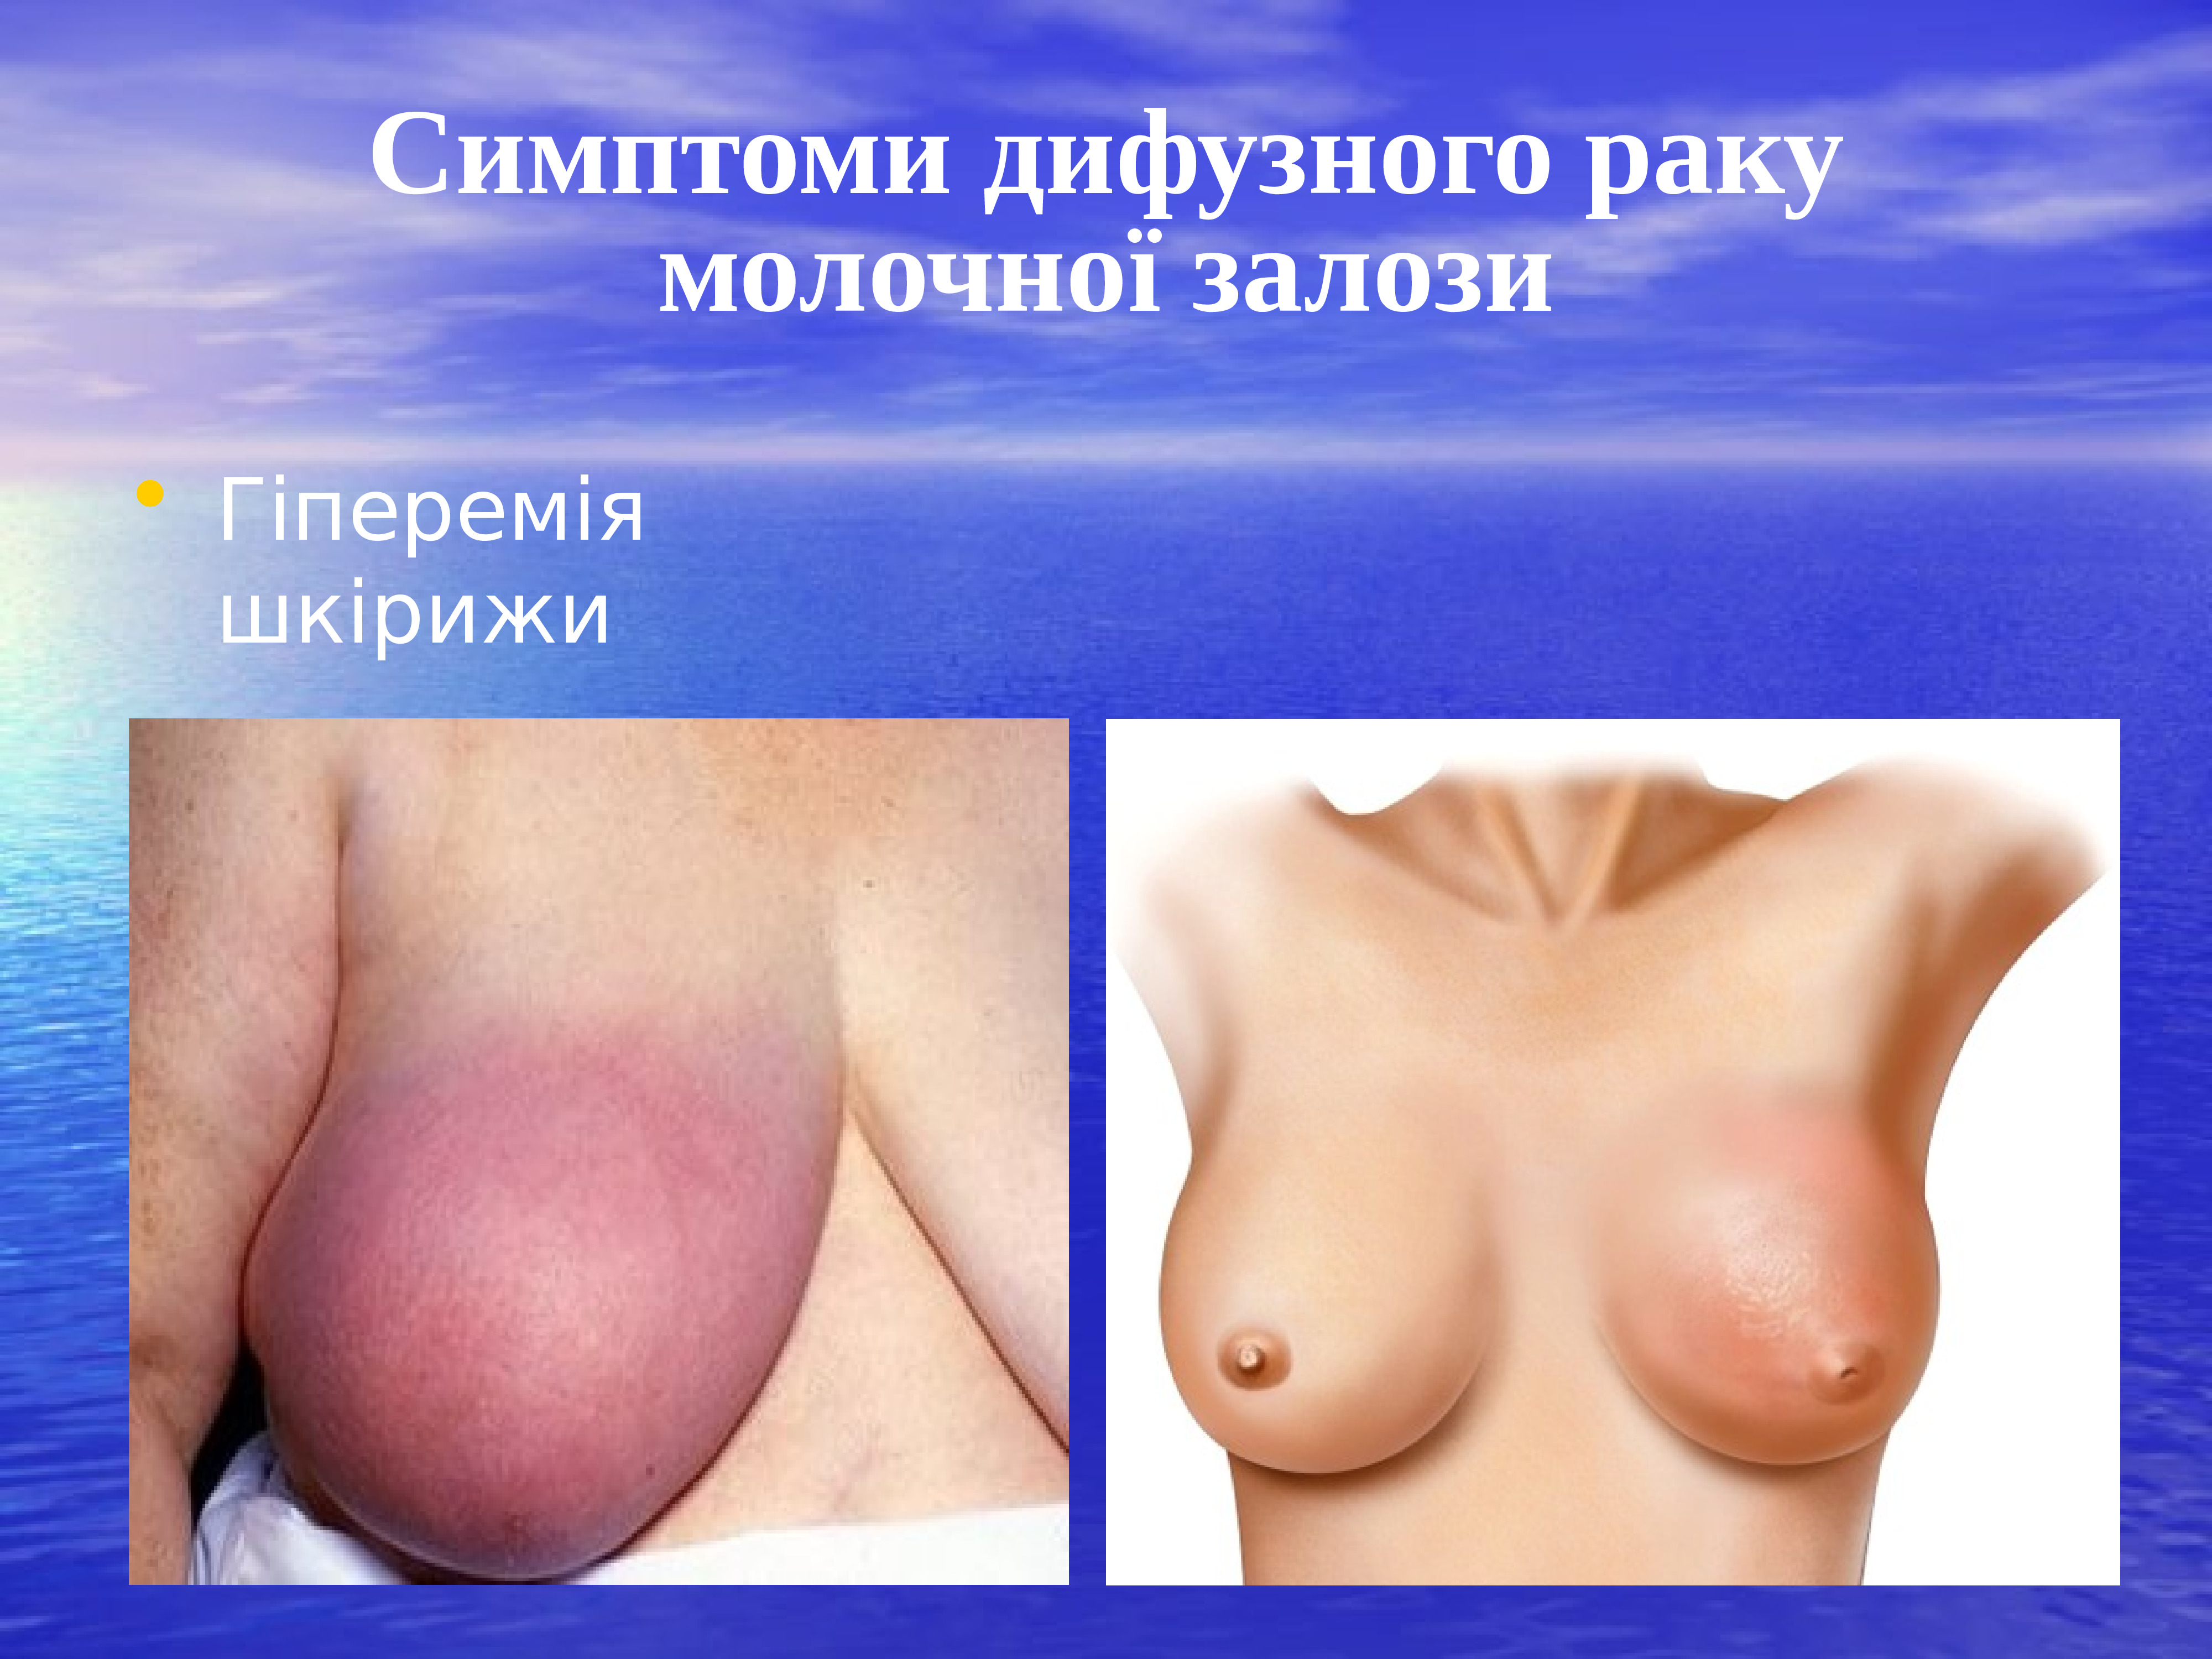 признаки онкологии груди у женщин фото 117